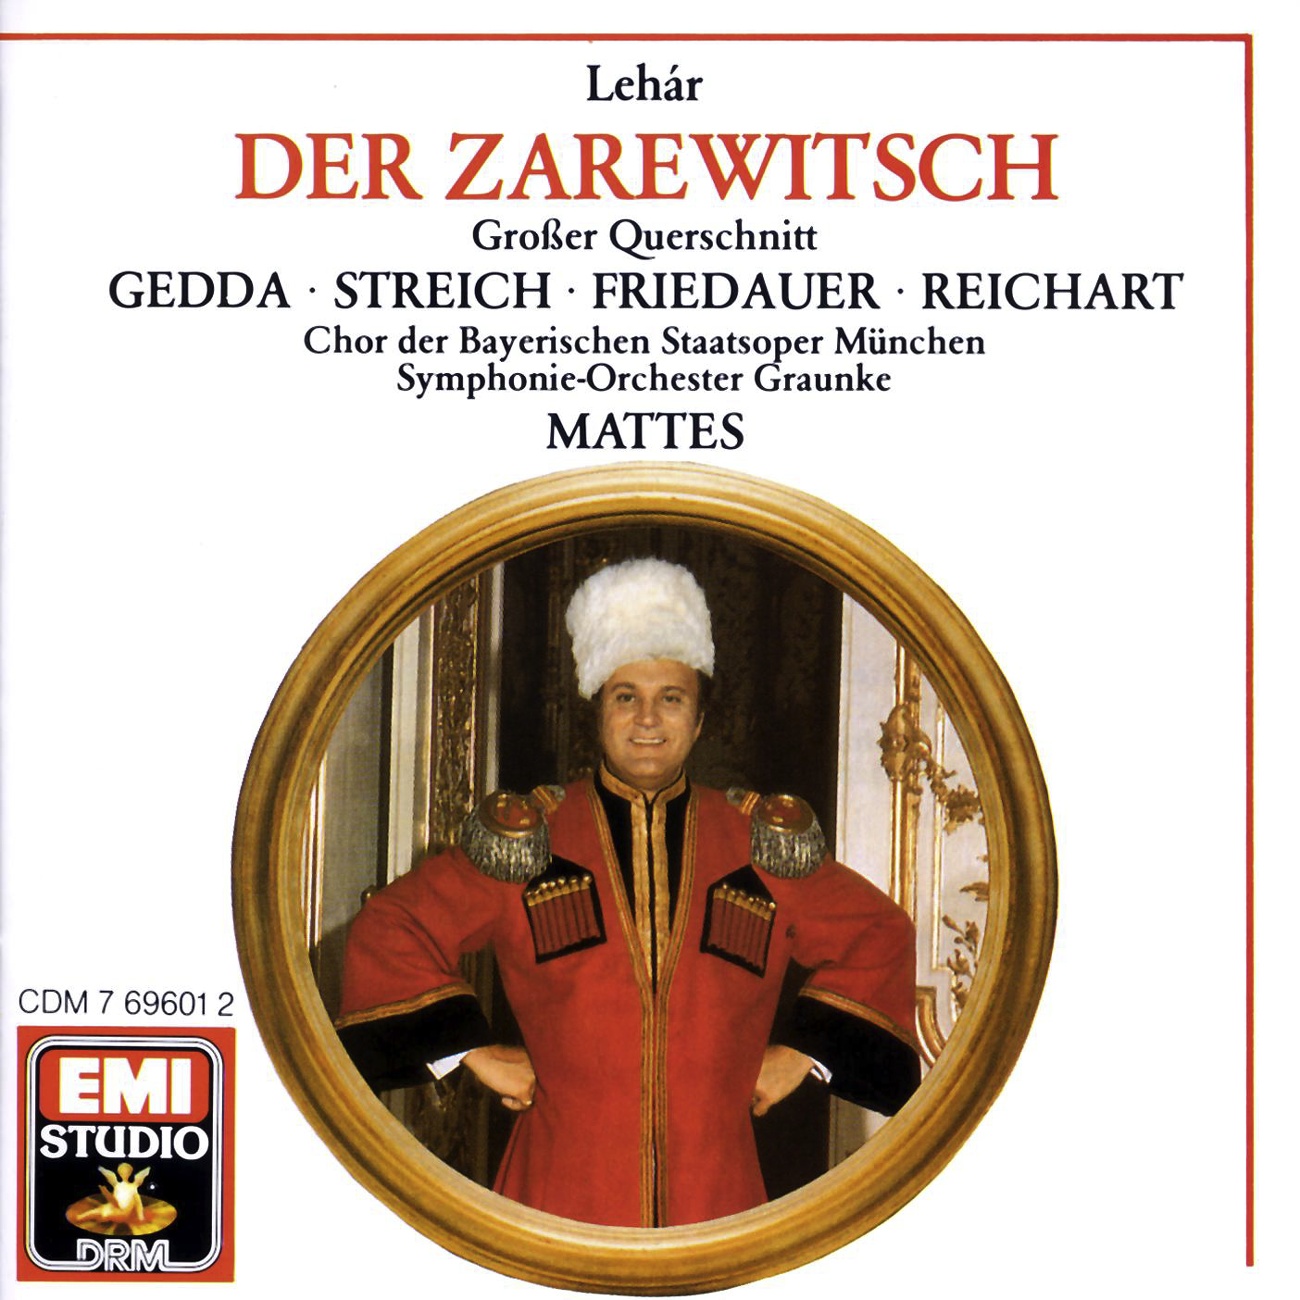 Der Zarewitsch  Highlights 1988 Digital Remaster, Zweiter Akt: Bleib bei mir  Hab' nur dich allein Zarewitsch, Sonja